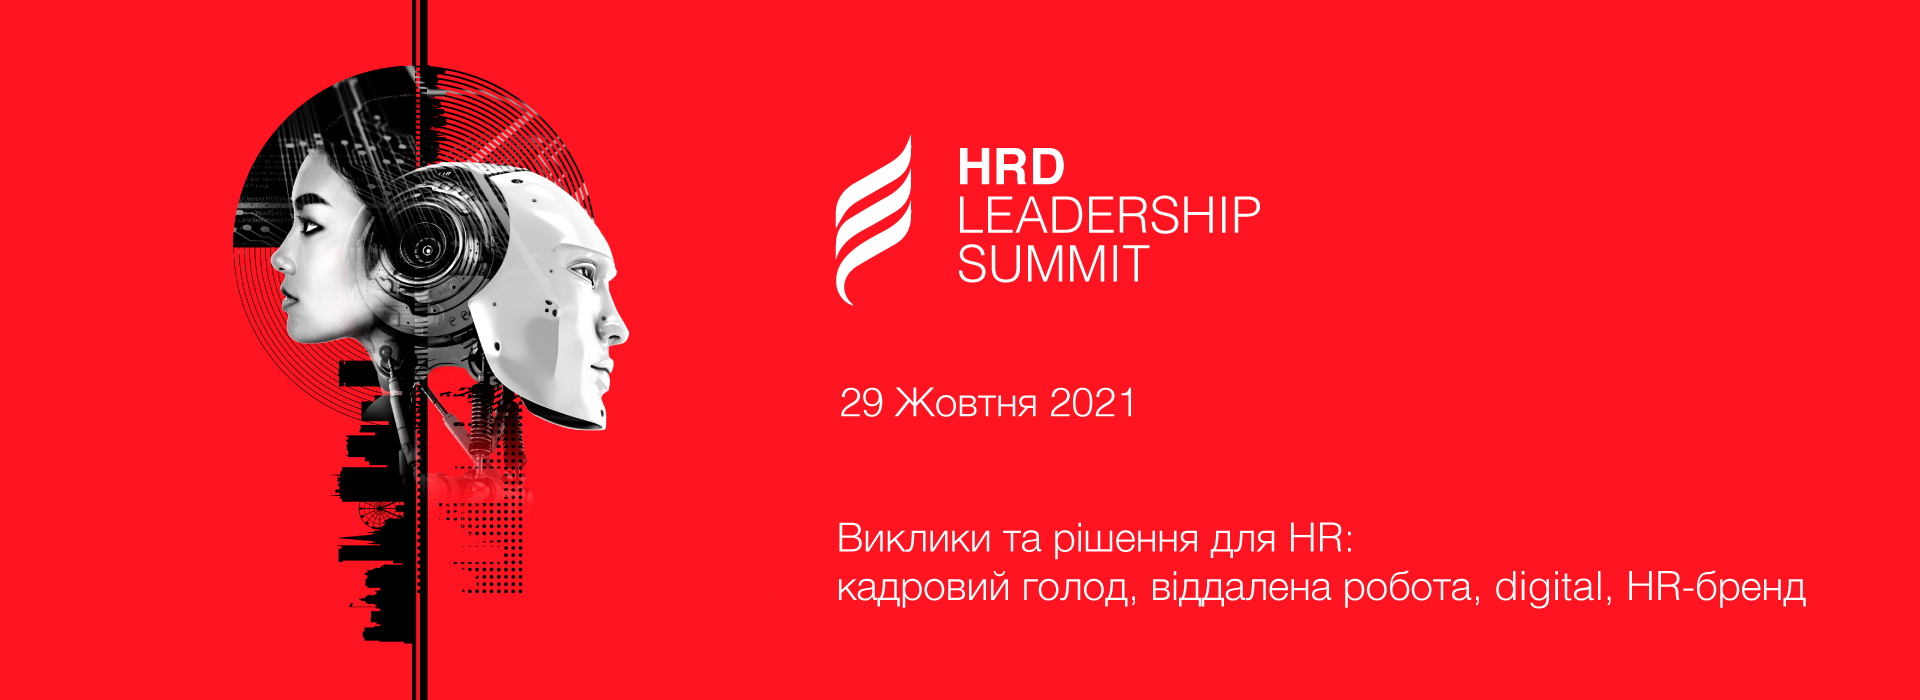 HRD Leadership Summit